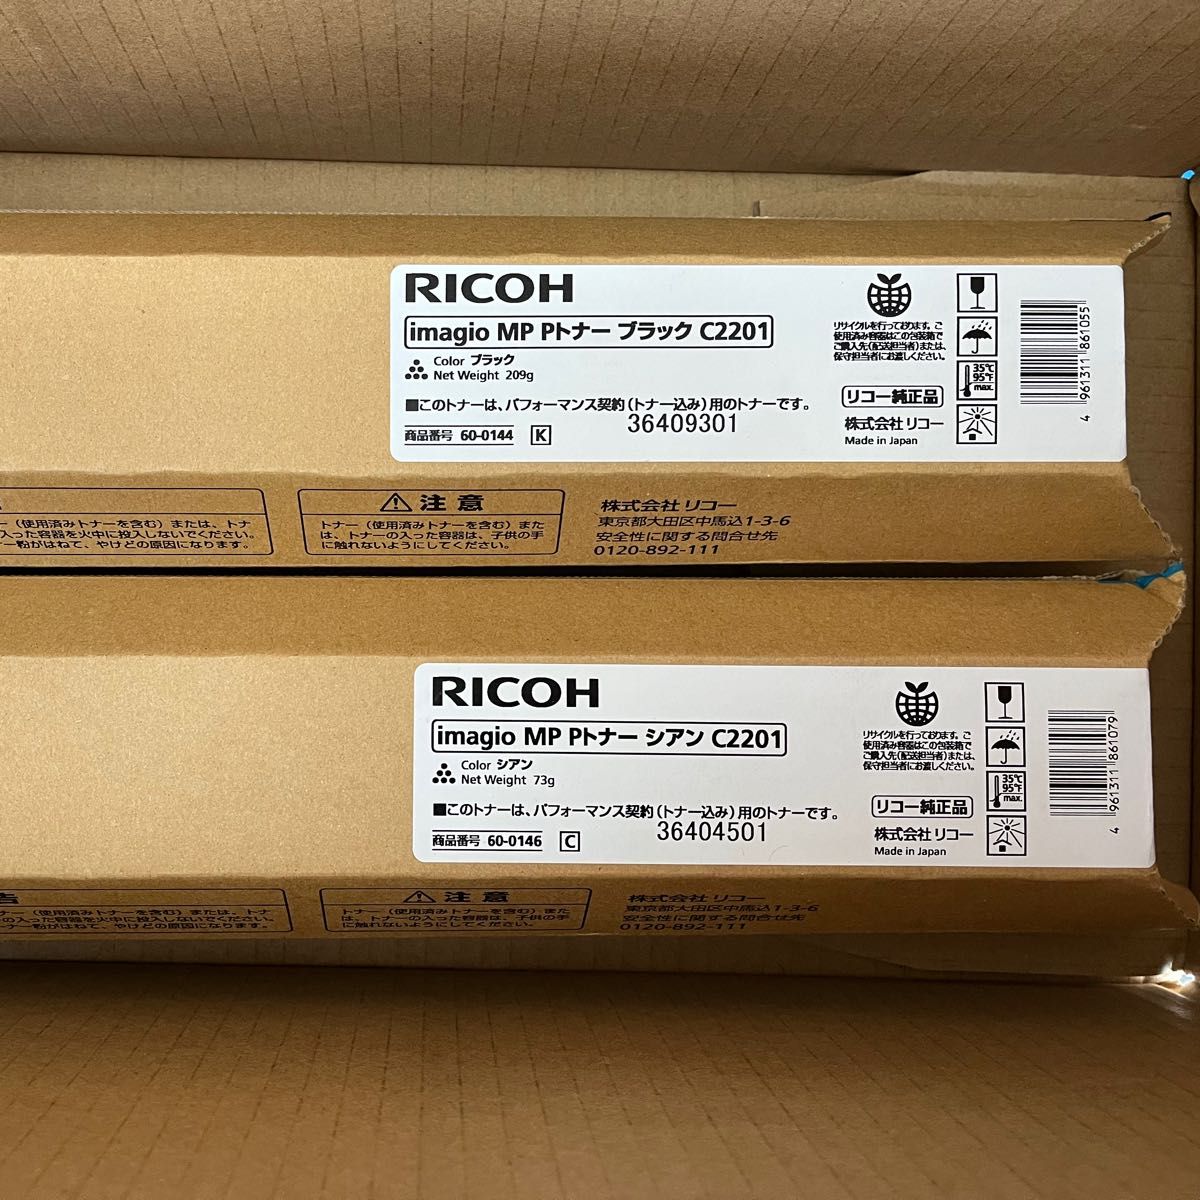 RICOH  imagio MP Pトナー C2201 4色セット